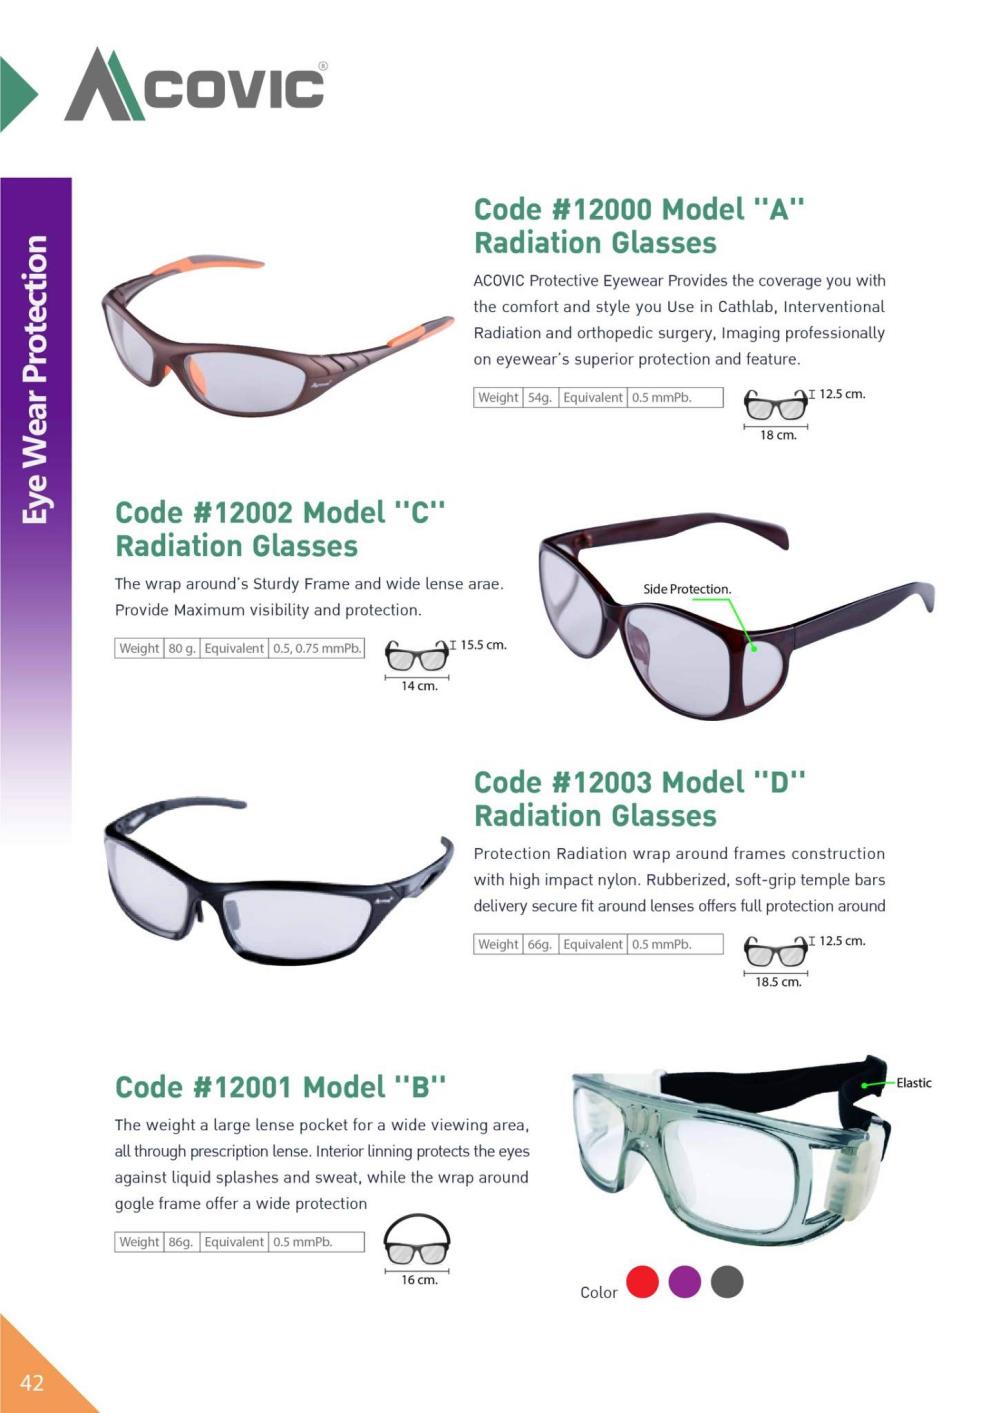 แว่นตากันรังสีเอกซเรย์ Model C  ( X-RAY Protective Lead Glasses ) 0.5 mmPb